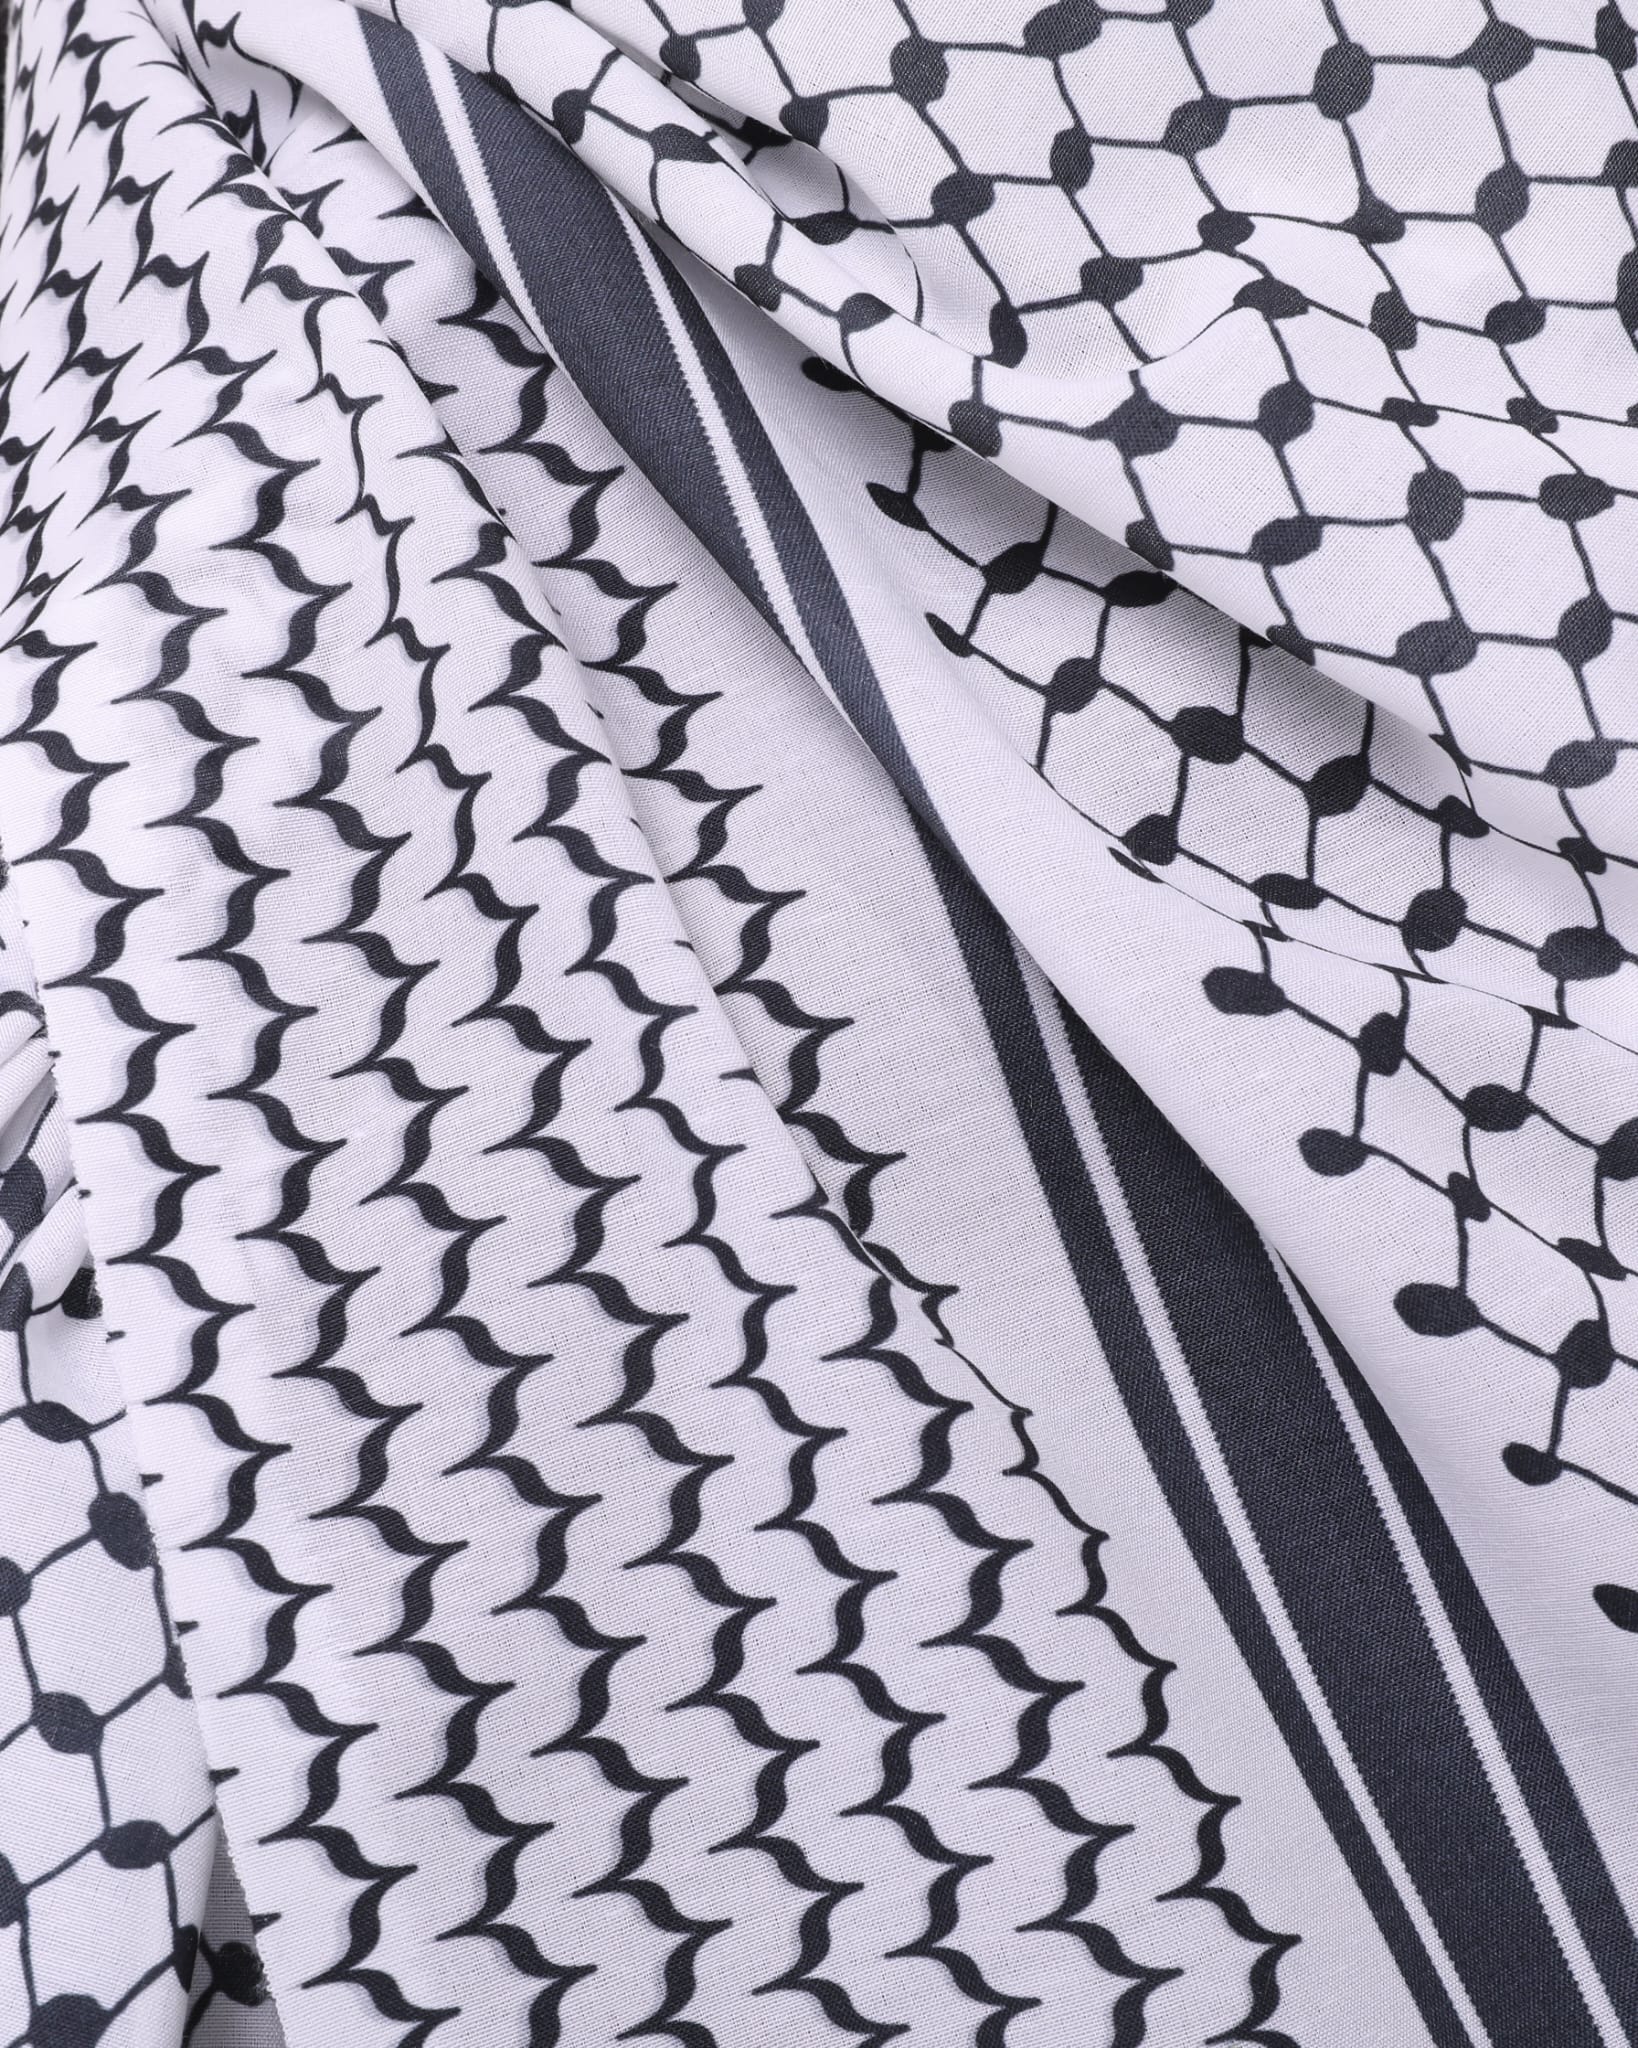 Palestinian flag keffiyeh hijab-scarf cotton flex fabric #528